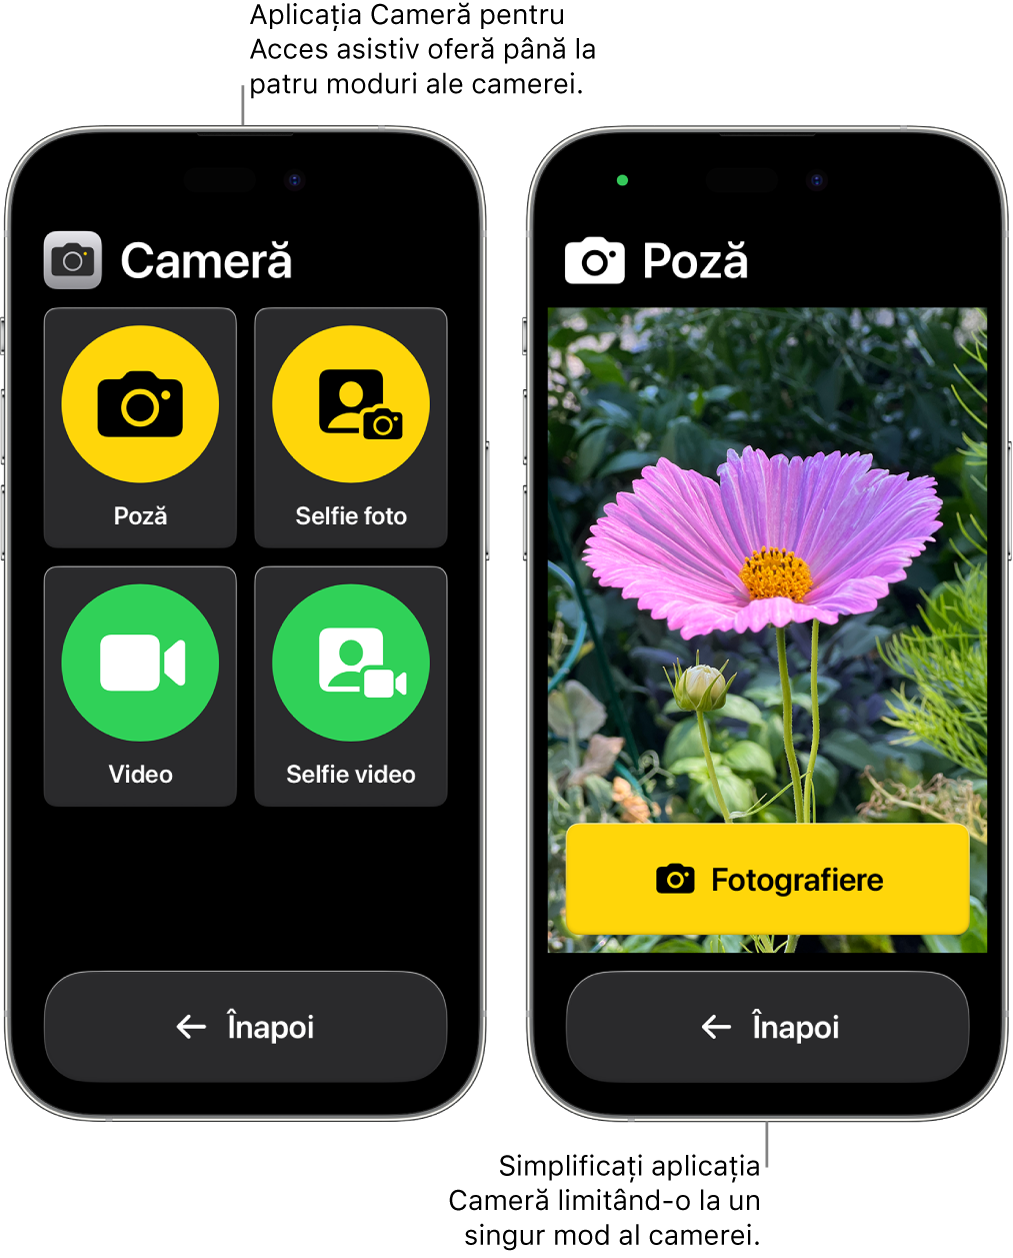 Două dispozitive iPhone în modul Acces asistiv. Un iPhone afișează aplicația Cameră cu modurile camerei pe care le poate alege utilizatorul (de exemplu, Video sau Selfie foto). Celălalt iPhone afișează aplicația Cameră cu un singur mod pentru poze.